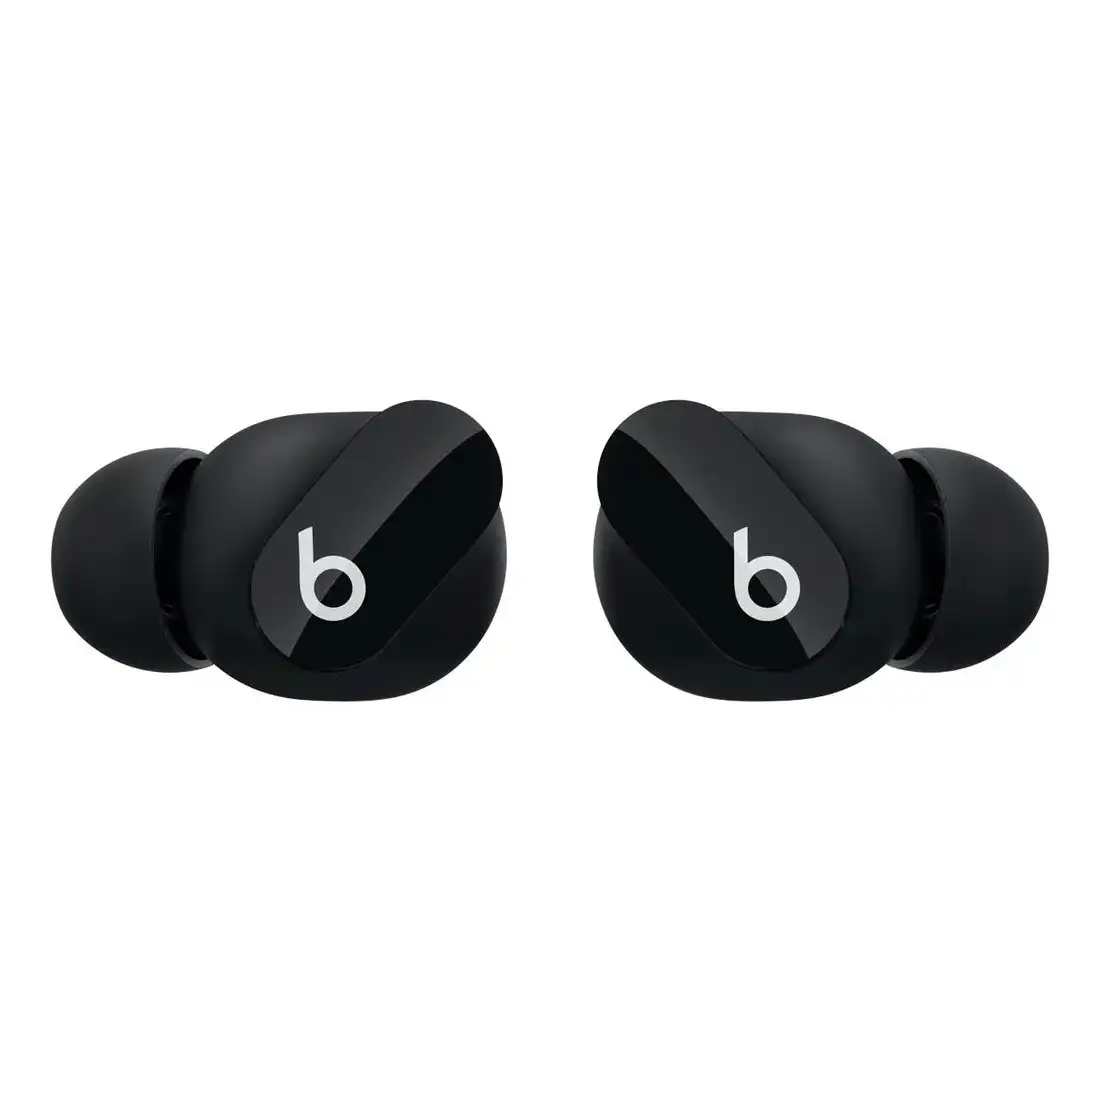 Beats Studio Buds True Wireless Noise Cancelling In-Ear Headphones